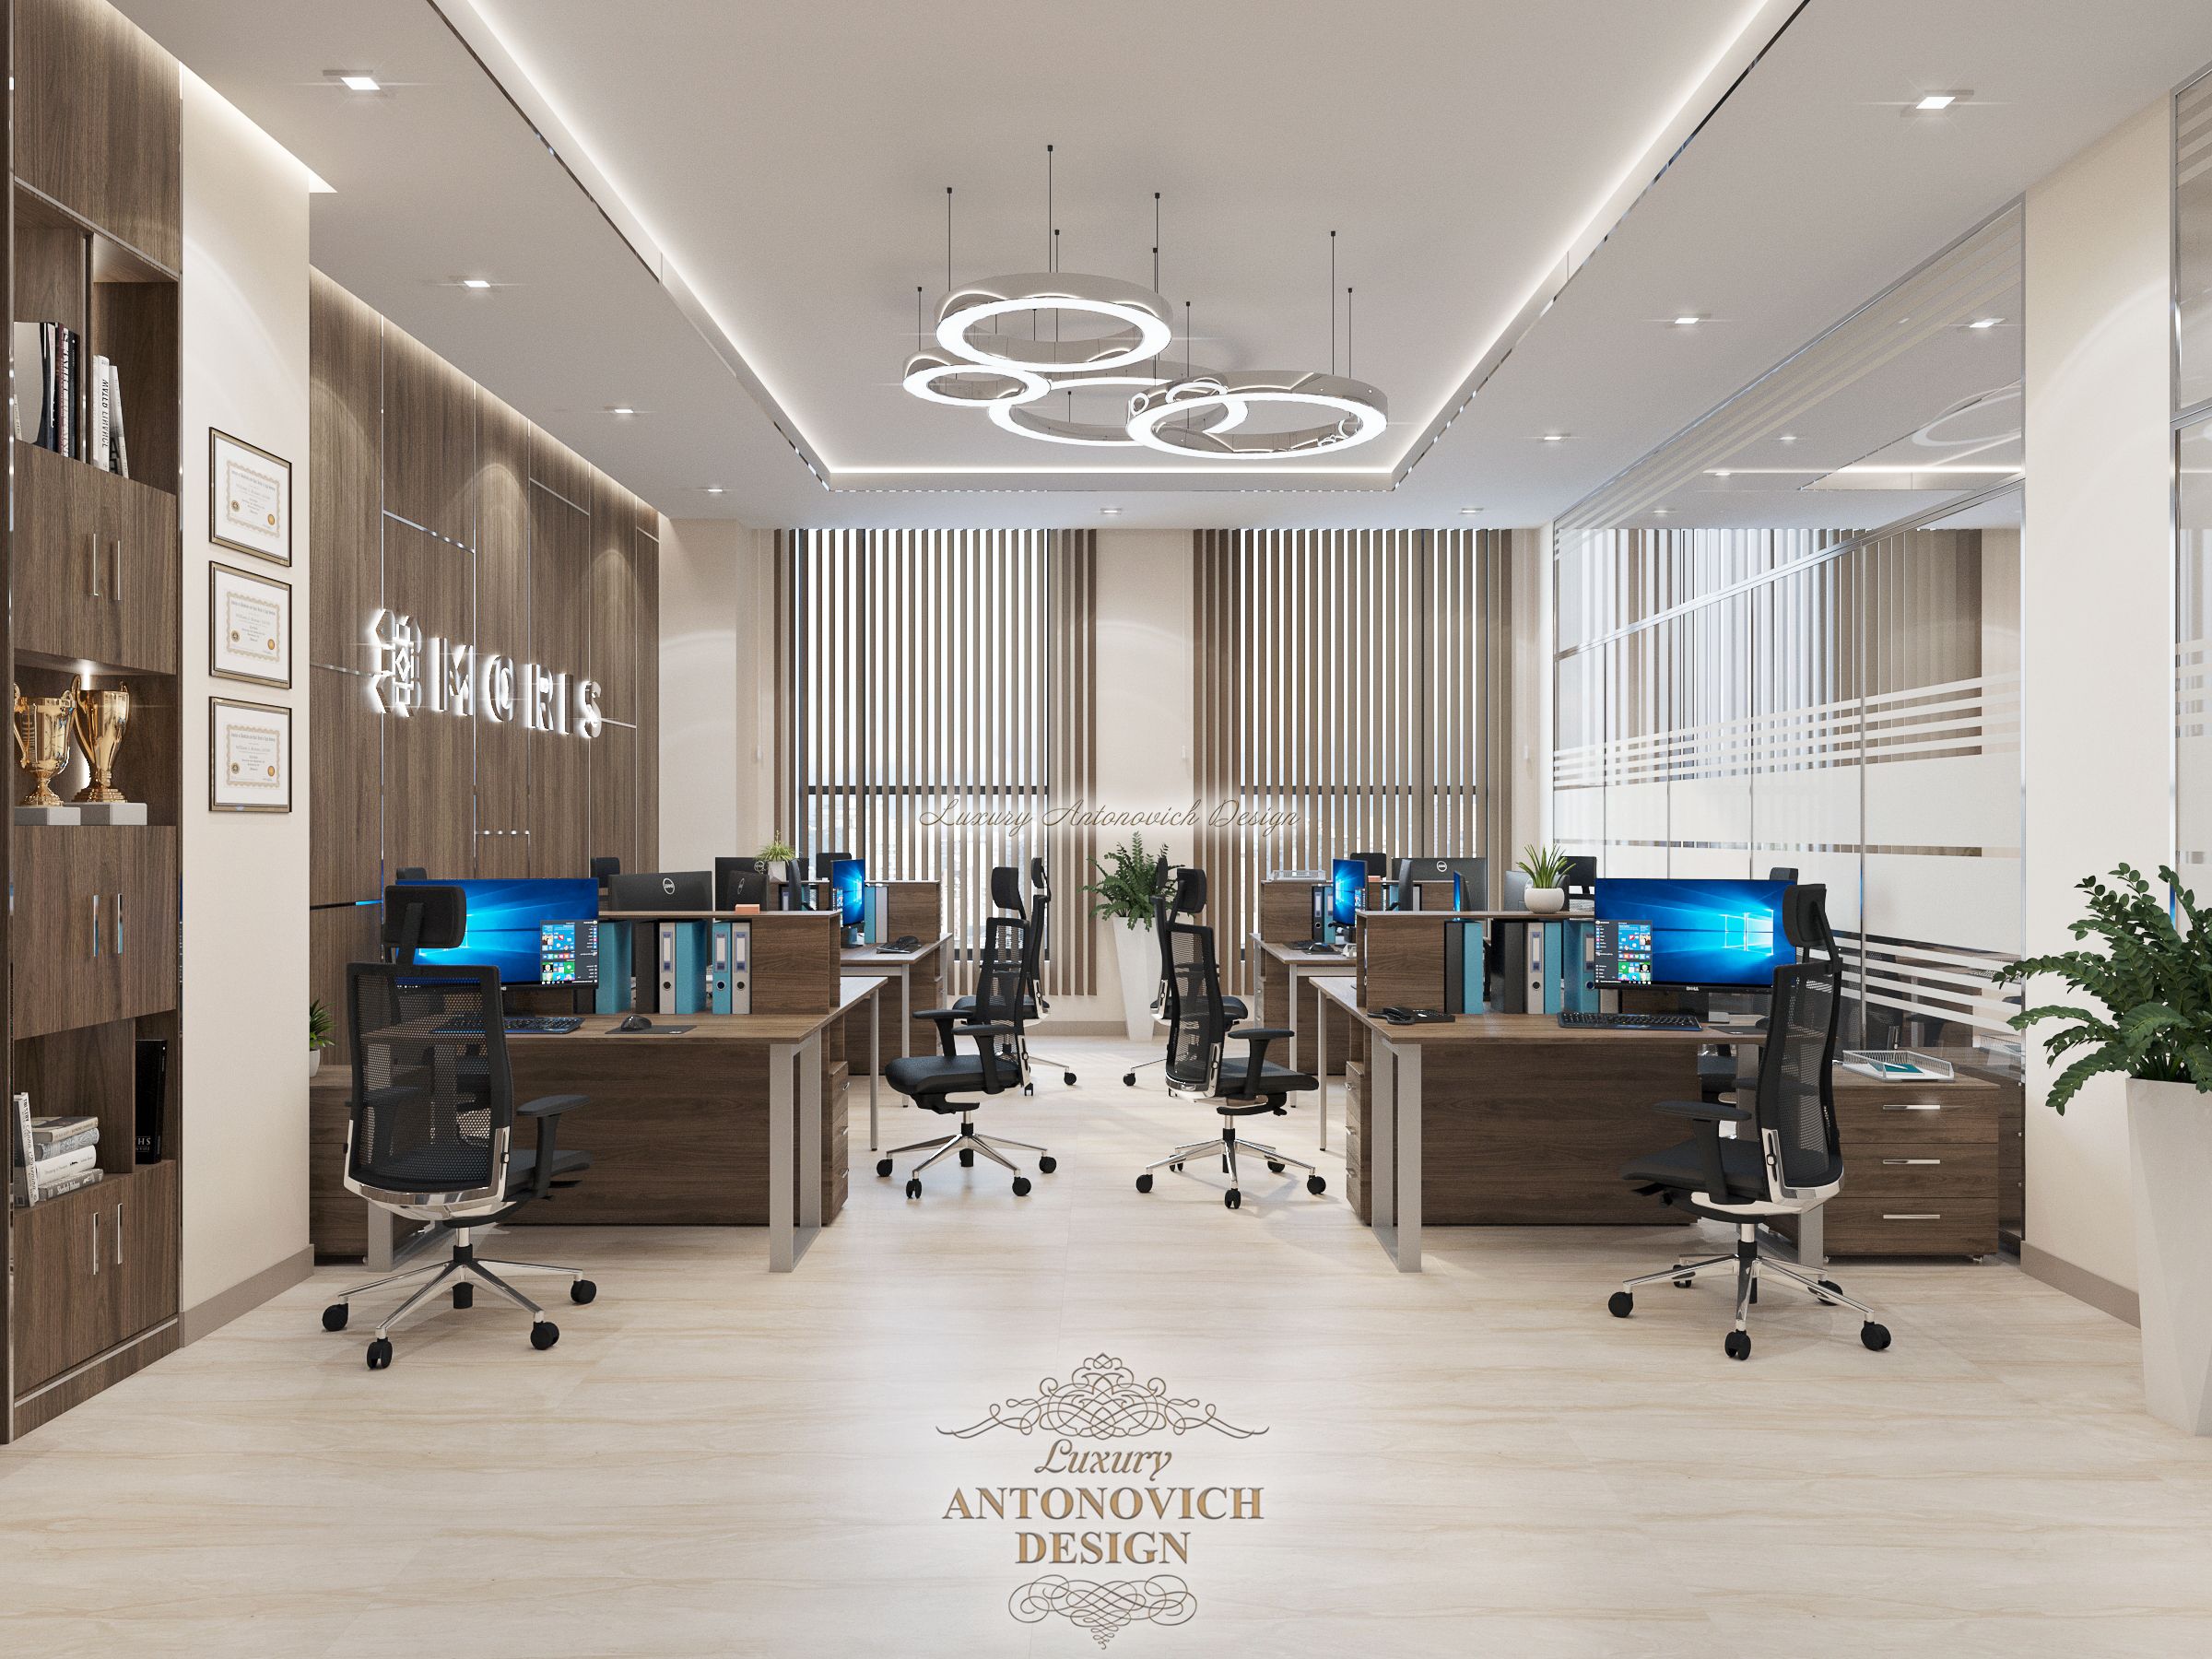 Дизайн интерьера Помещения 1 офиса, Студия Luxury Antonovich Design